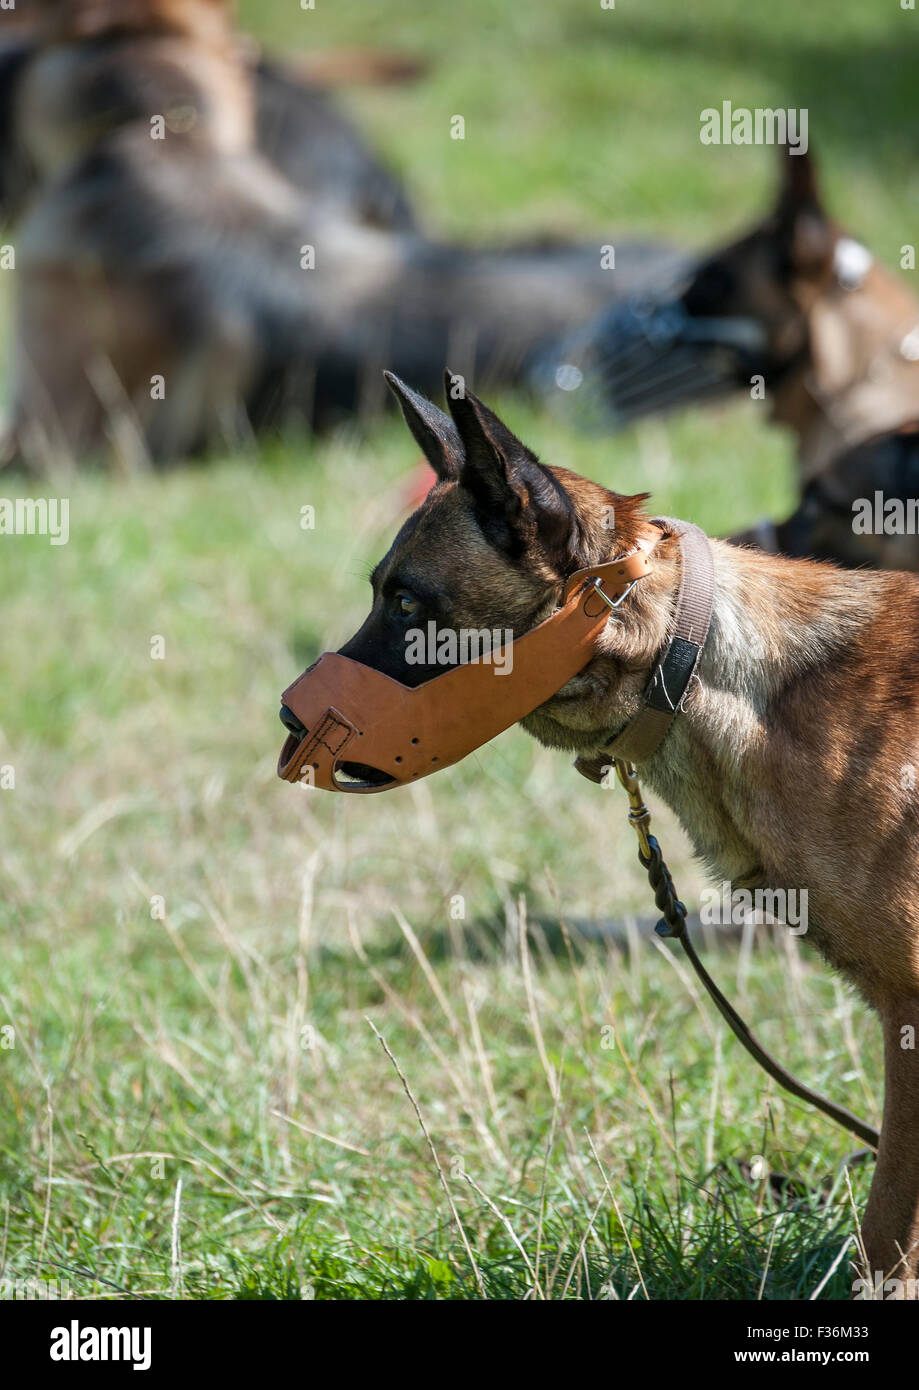 Das Bild zeigt einen Maulkorb tragen Wachmann Hunde während den Gehorsam und Kontrolle Test der Arbeitsgruppe Sicherheit Hund Wettbewerb. Stockfoto